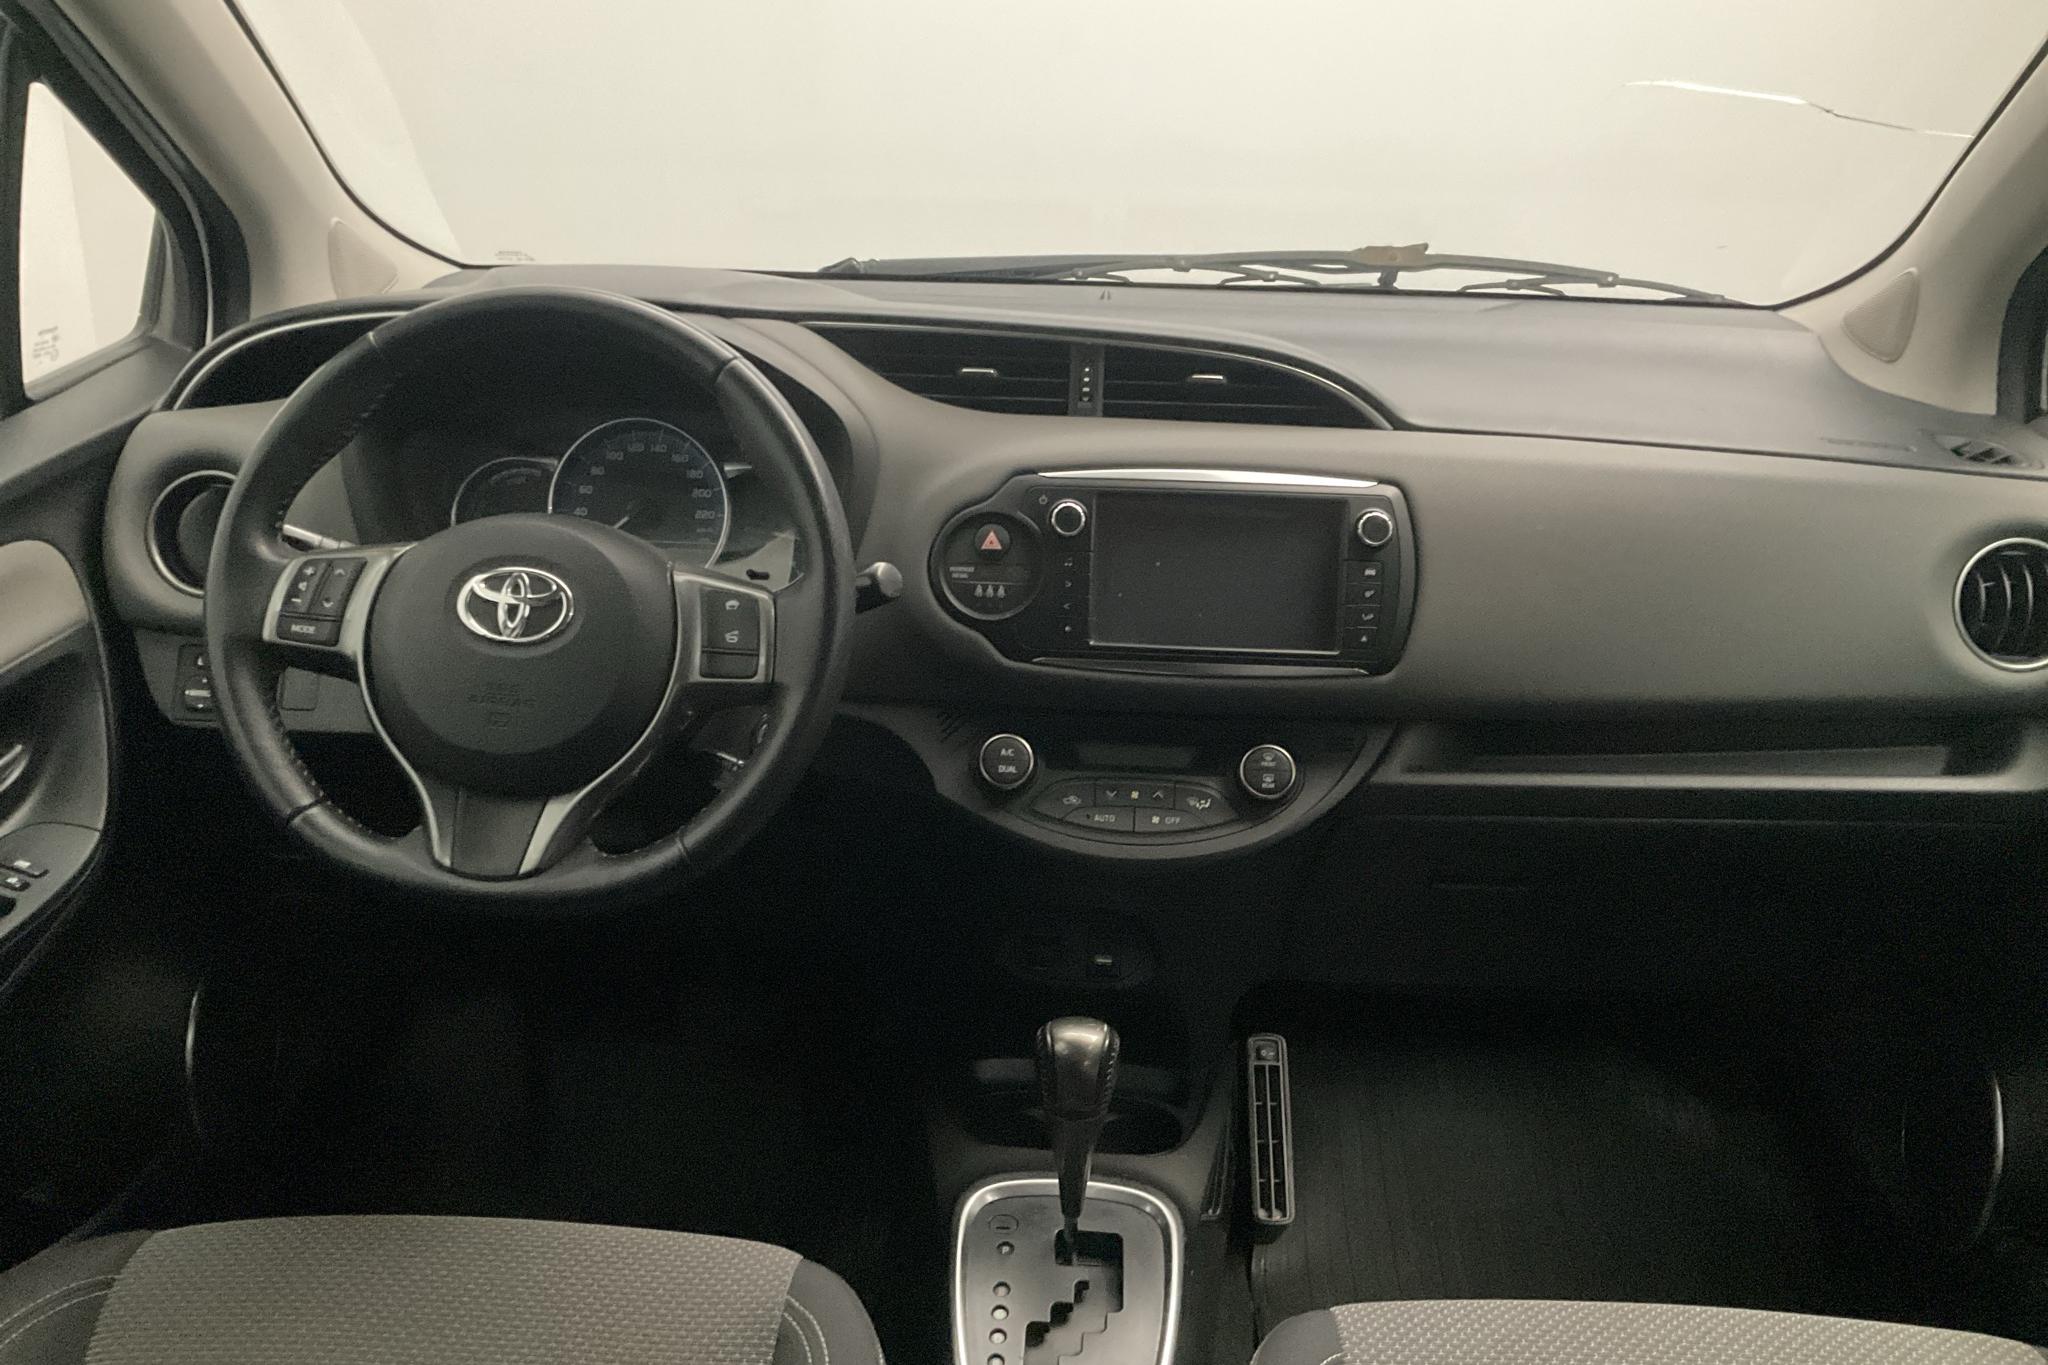 Toyota Yaris 1.5 HSD 5dr (75hk) - 108 100 km - Automaattinen - valkoinen - 2015